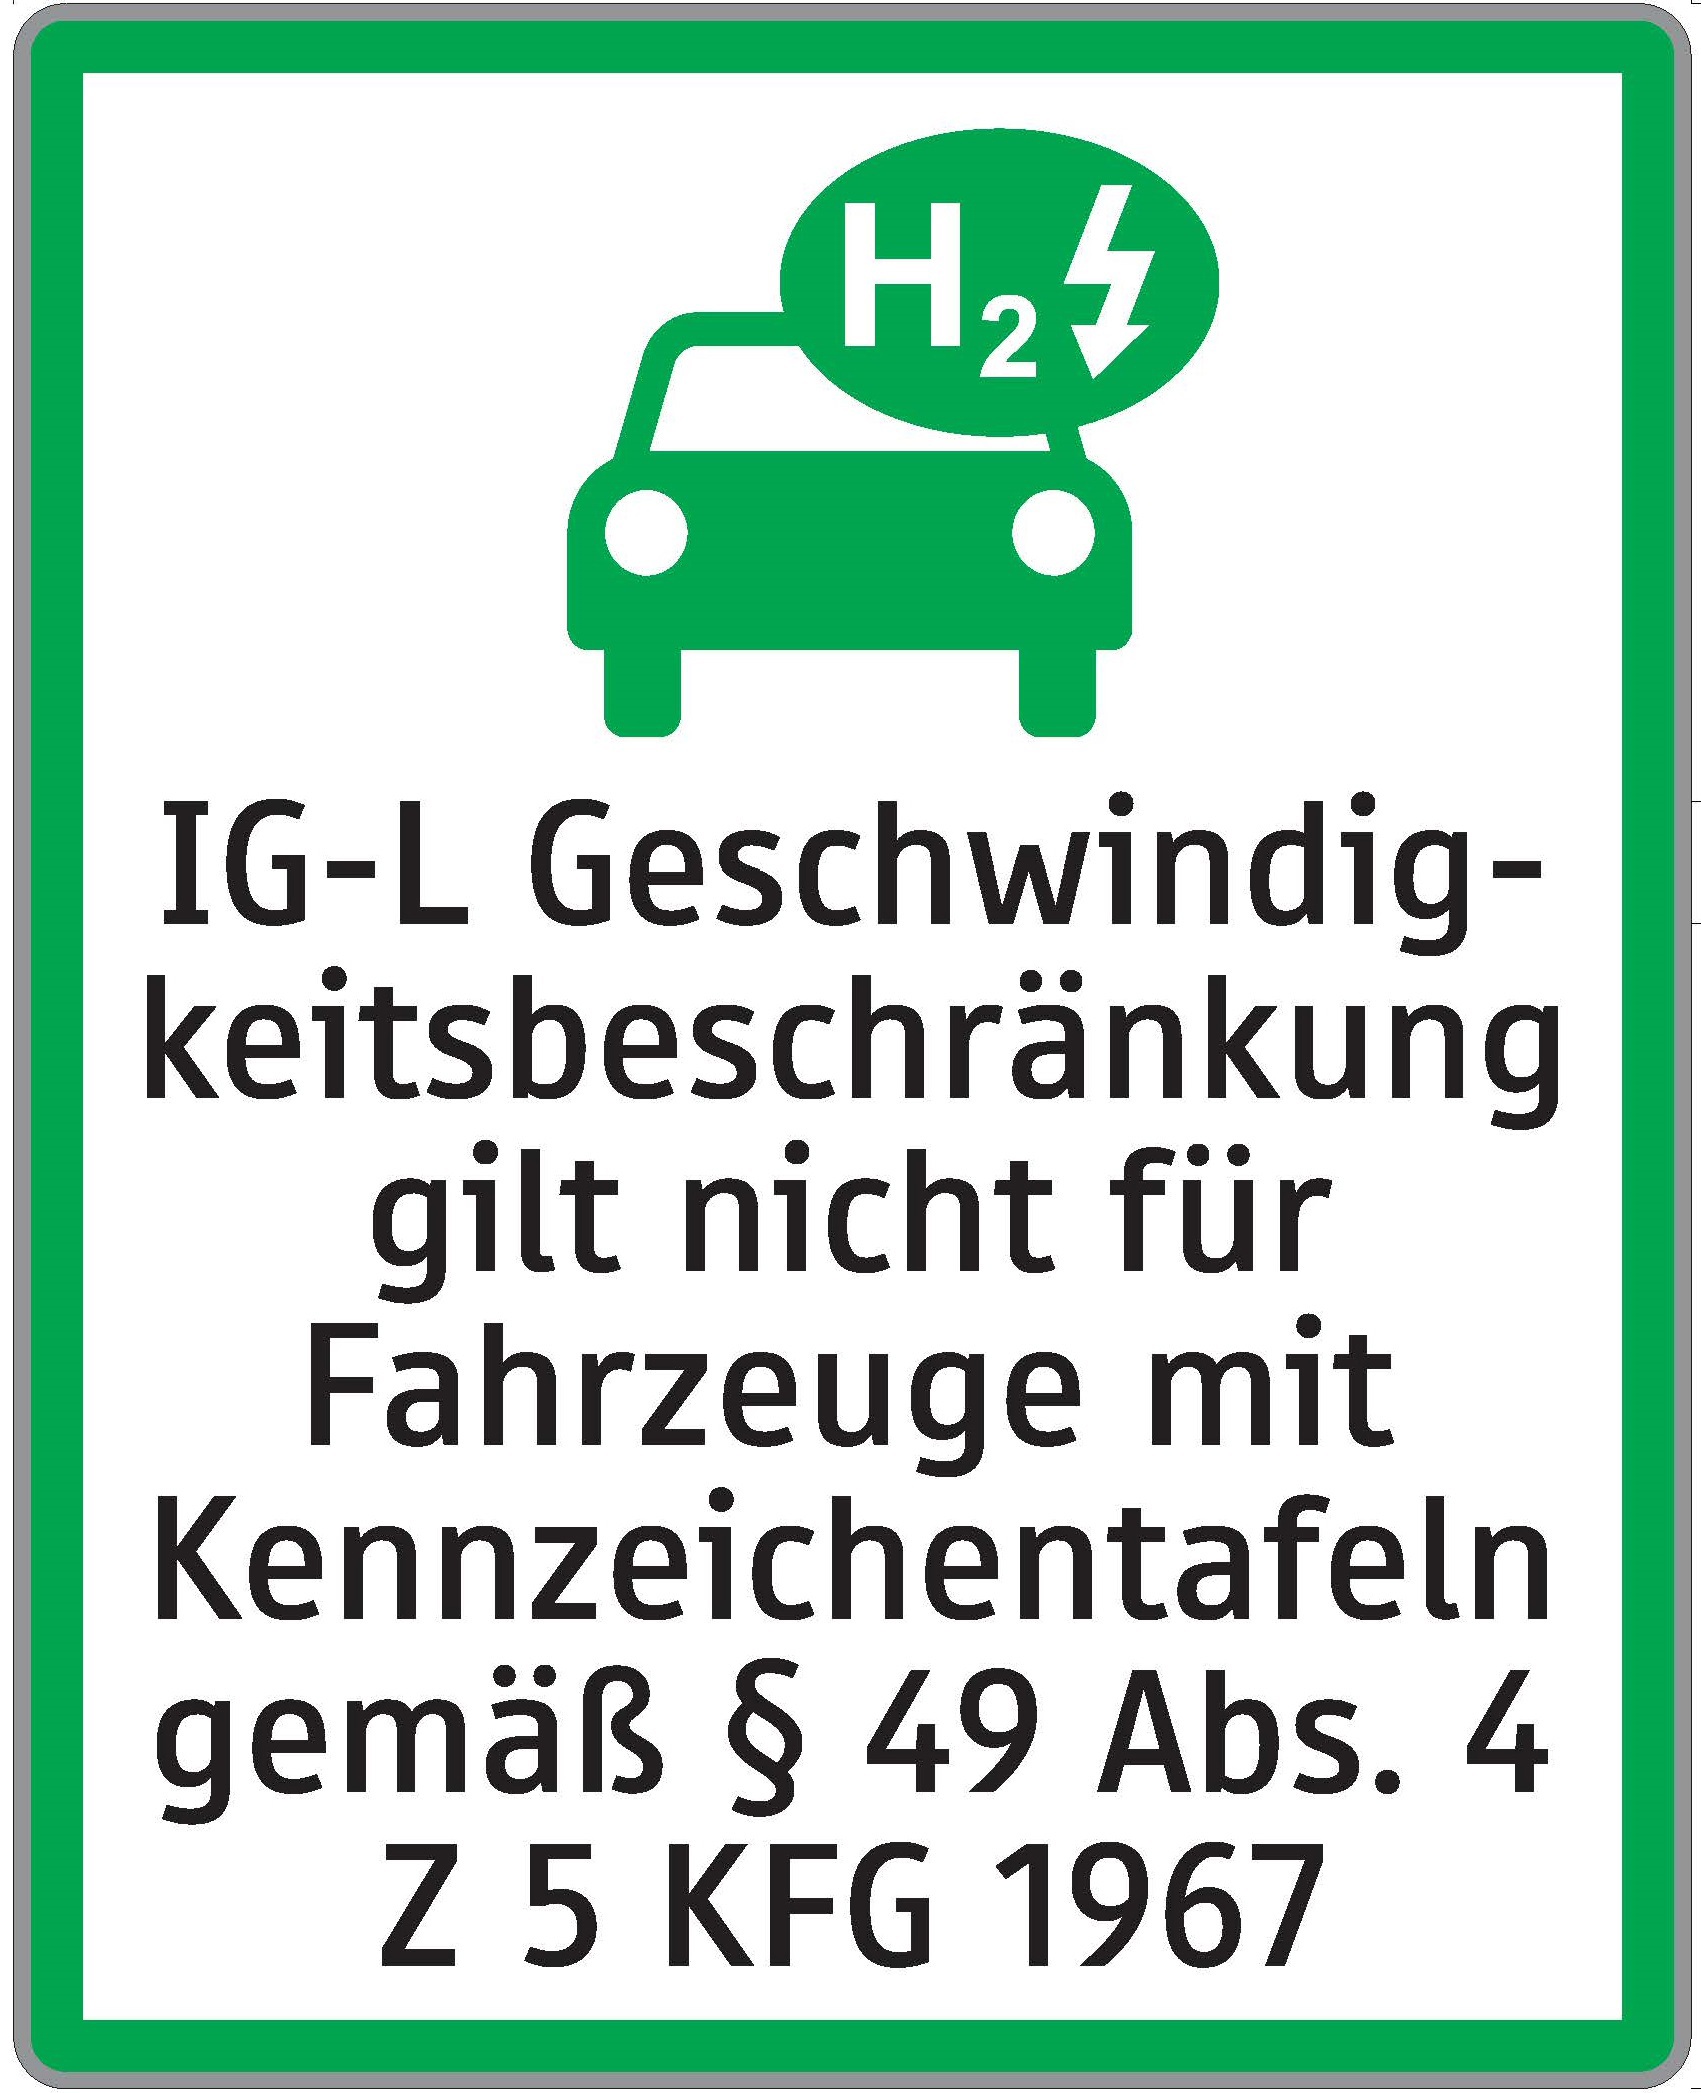 Tafel "IG-L Geschwindkeitsbeschränkung gilt nicht für Fahrzeuge mit Kennzeichentafeln gemäß § 49 Absaz 4 Z 5 KFG 1967"